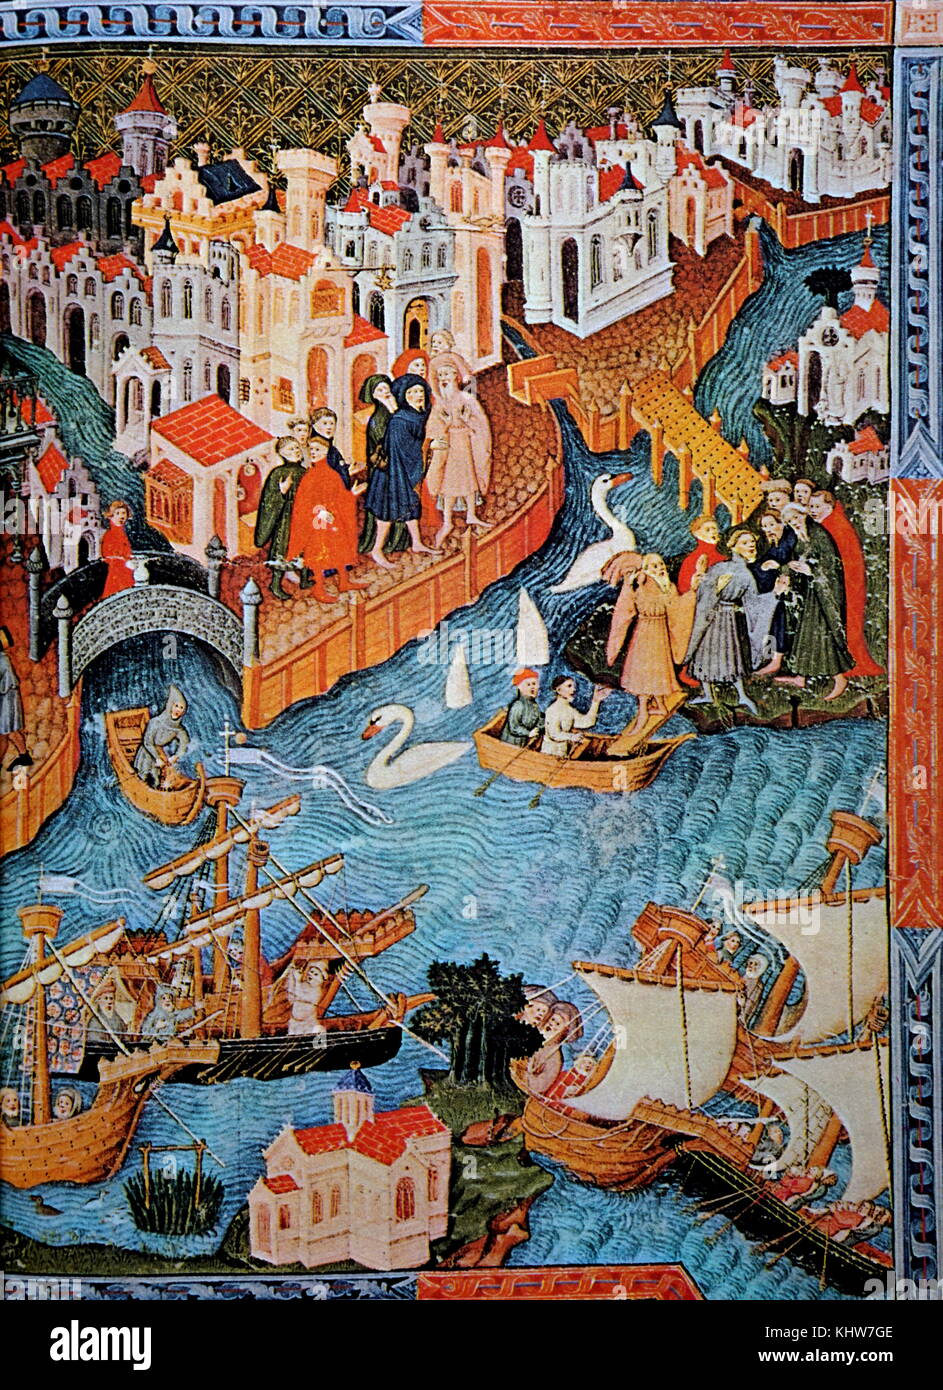 Pintura representando dejando Marco Polo de Venecia. Marco Polo (1254-1324), un comerciante veneciano del viajero. Fecha del siglo XIII. Foto de stock